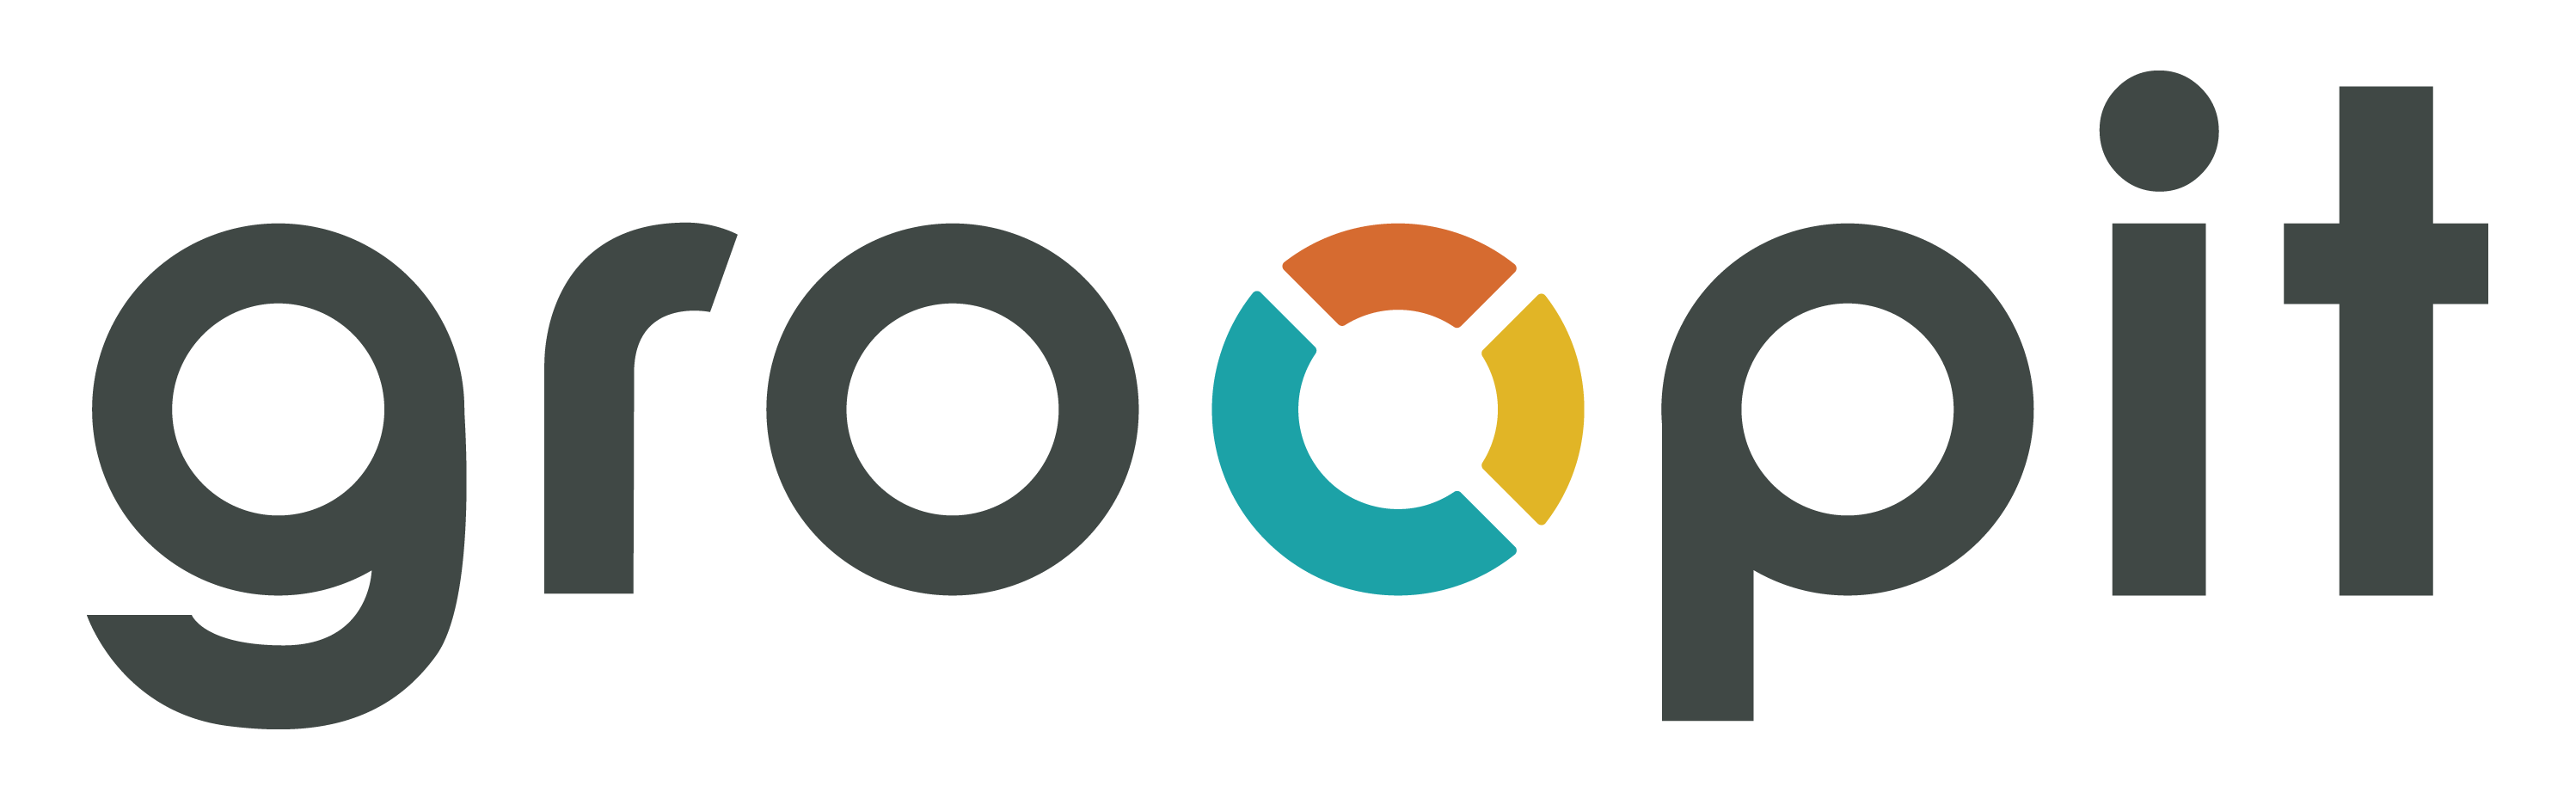 Groopit logo